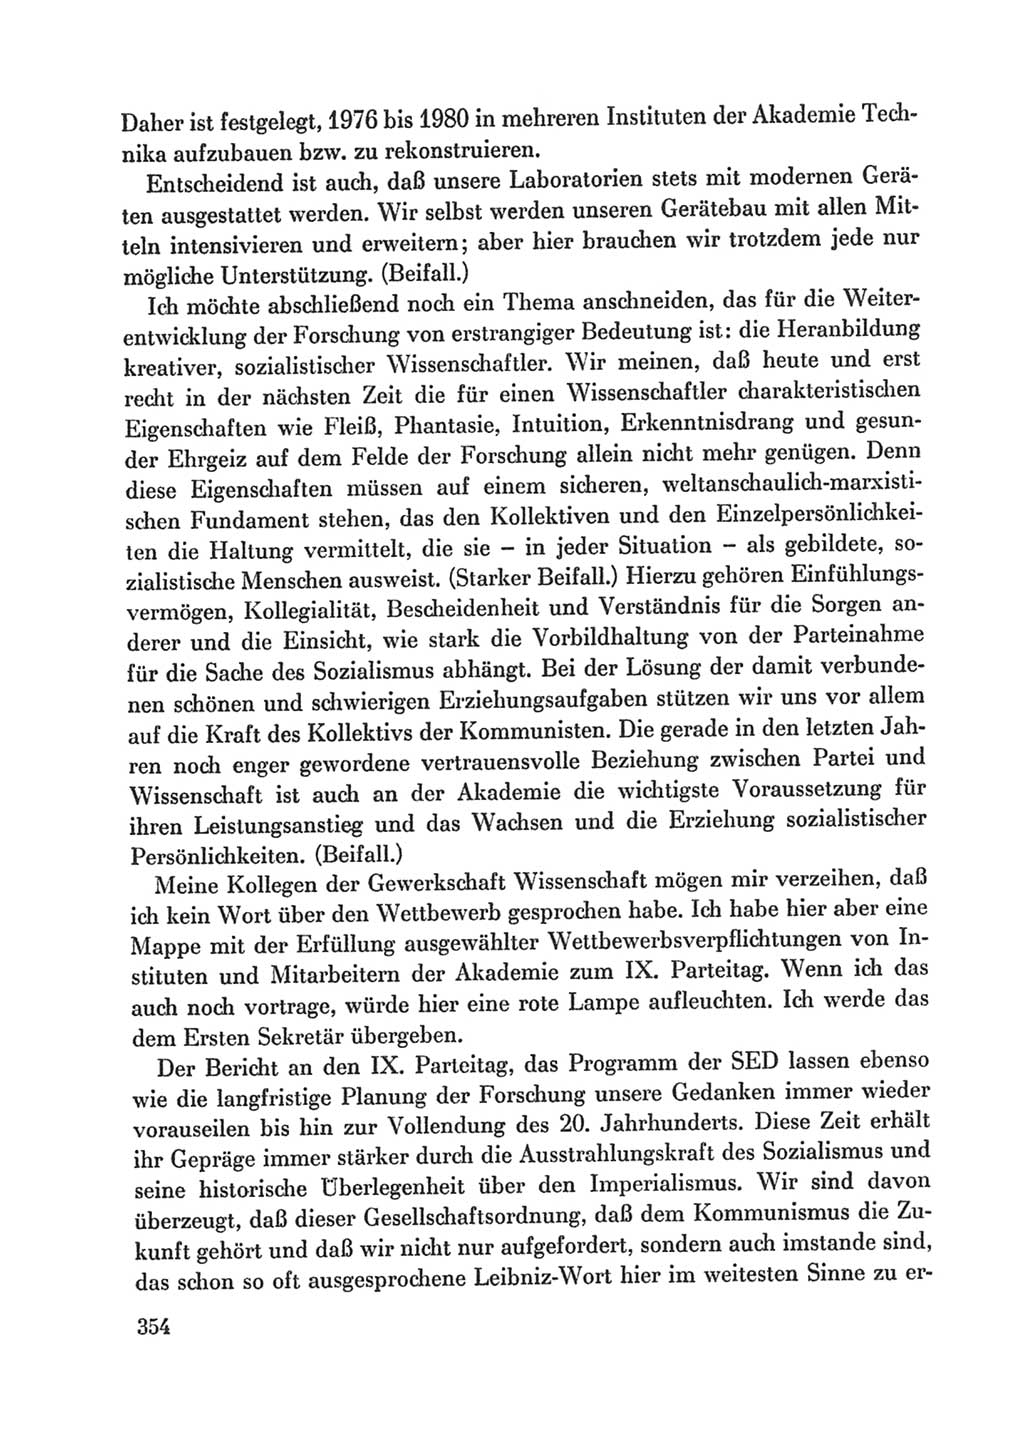 Protokoll der Verhandlungen des Ⅸ. Parteitages der Sozialistischen Einheitspartei Deutschlands (SED) [Deutsche Demokratische Republik (DDR)] 1976, Band 1, Seite 354 (Prot. Verh. Ⅸ. PT SED DDR 1976, Bd. 1, S. 354)